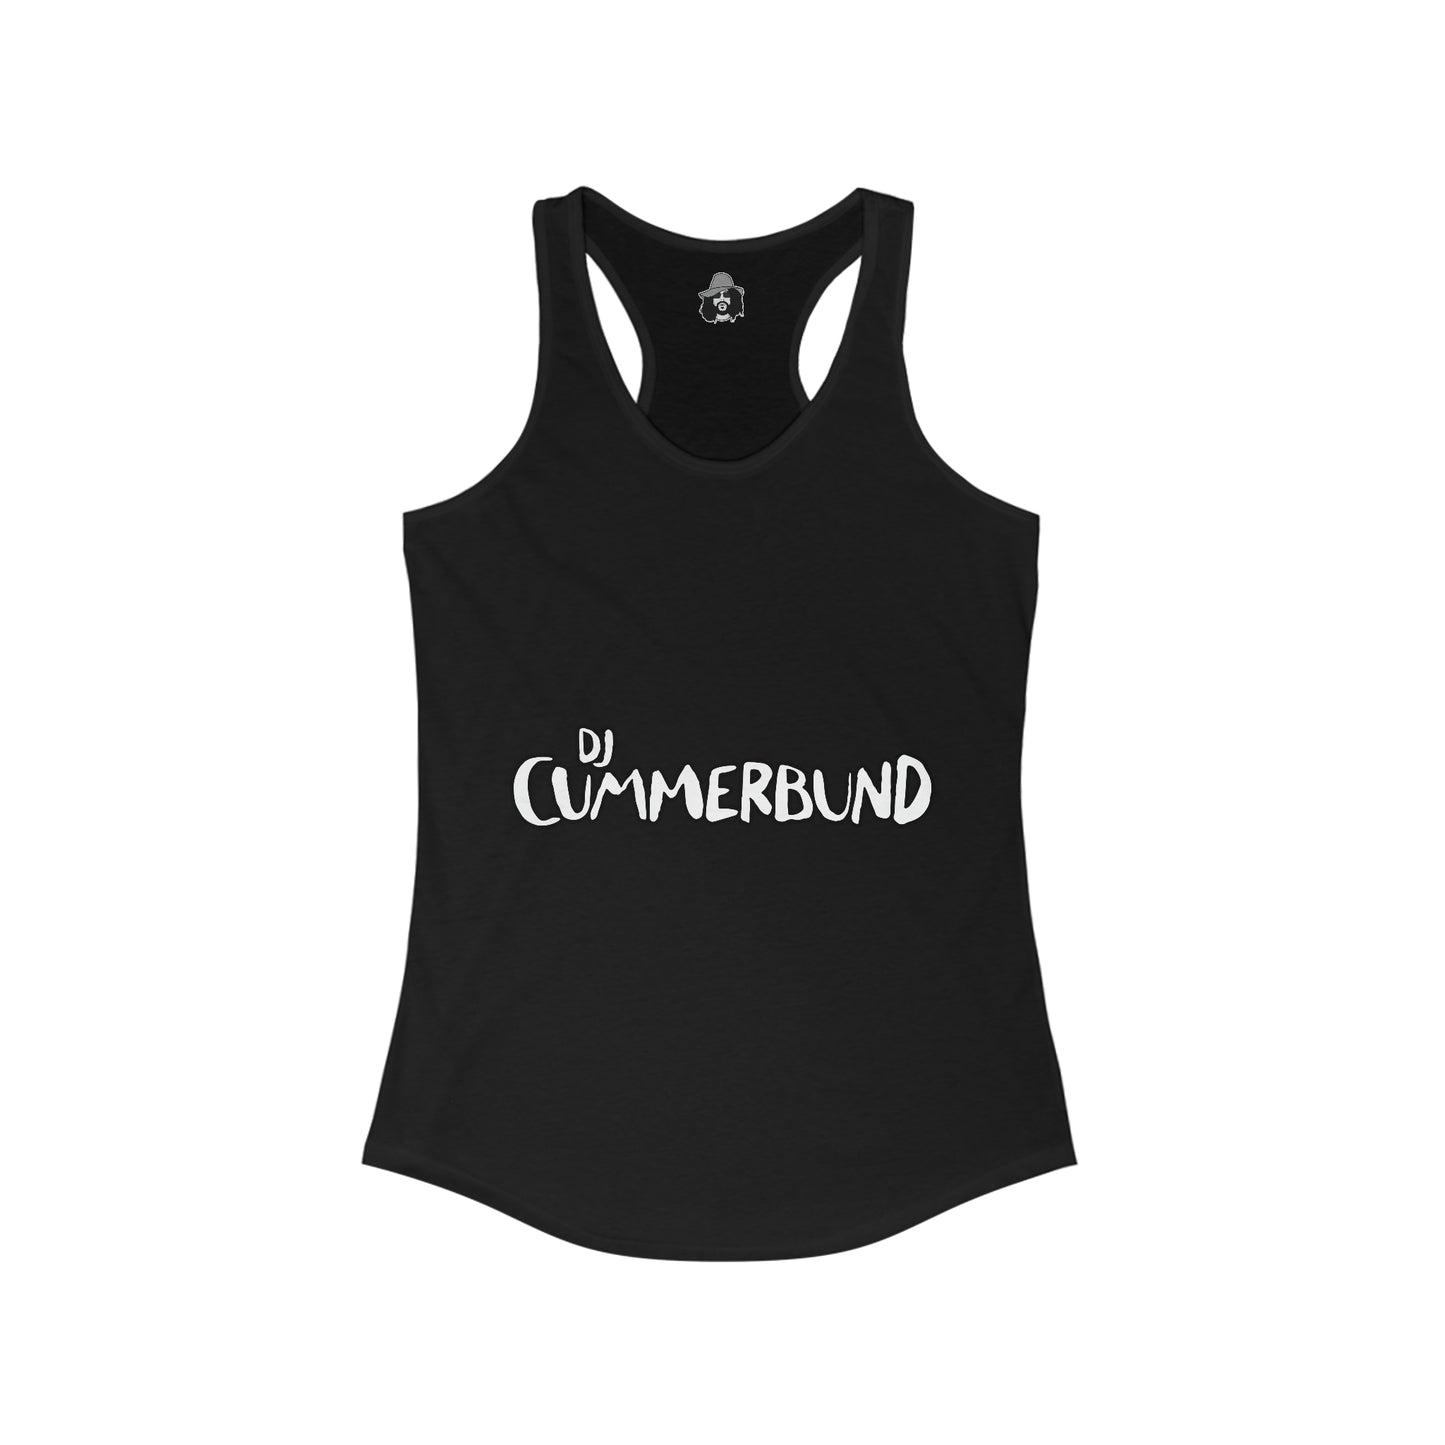 DJ Cummerbund Logo Women's Cut Tank Top